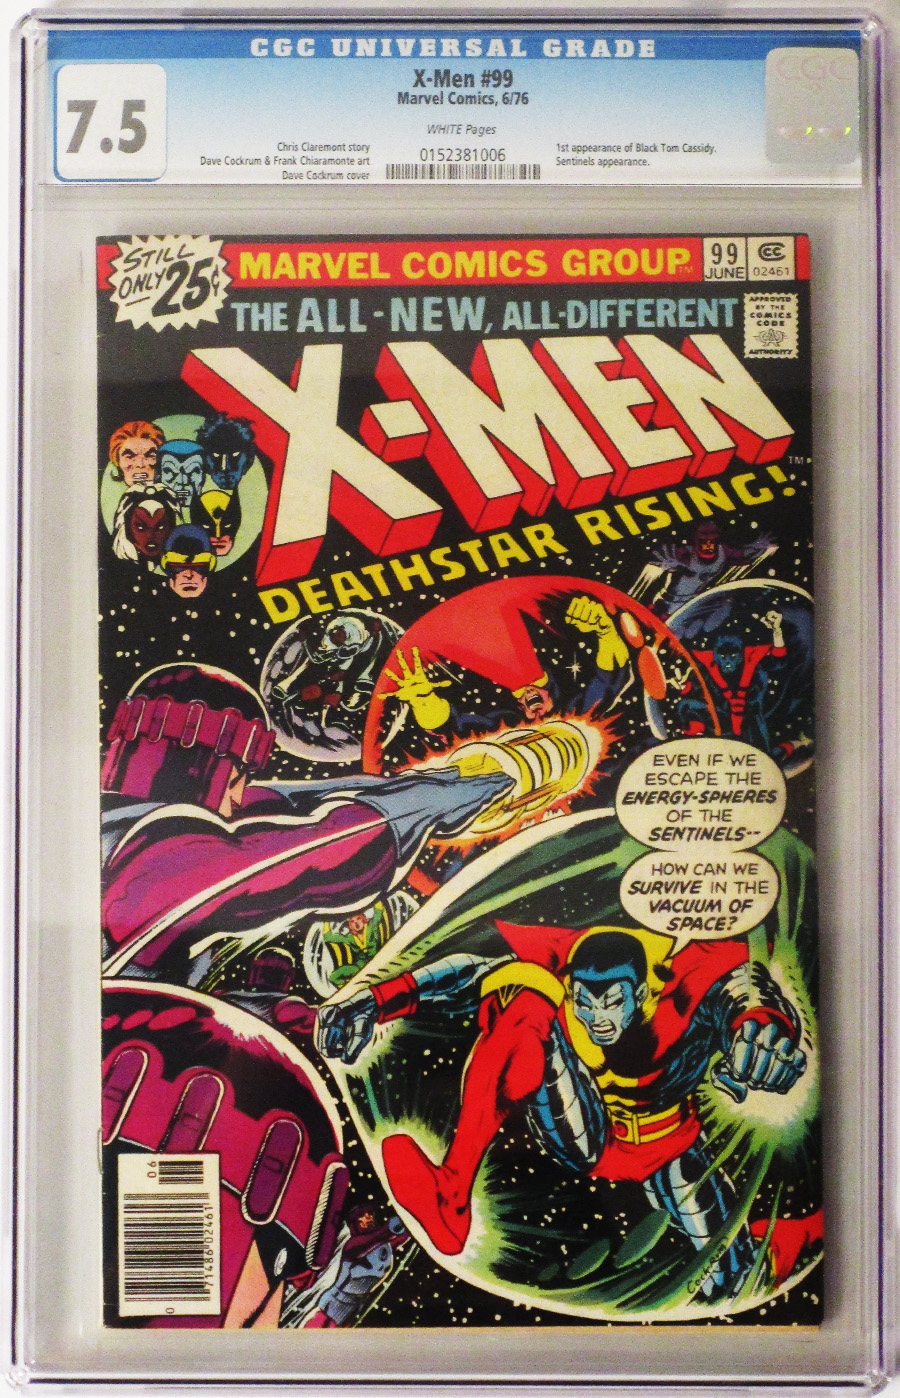 X-Men Vol 1 #99 Cover C CGC 7.5 25-Cent Regular Cover